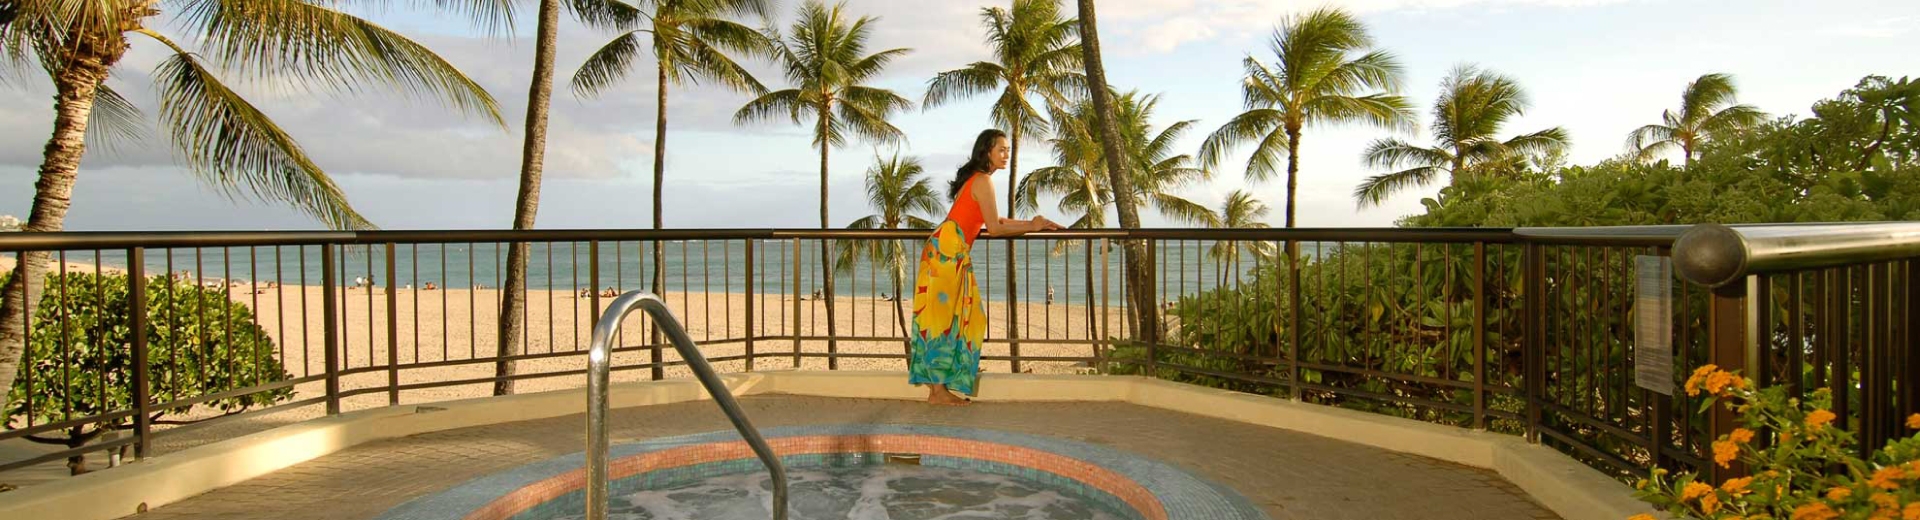 夏威夷旅遊飯店推薦-希爾頓渡假村